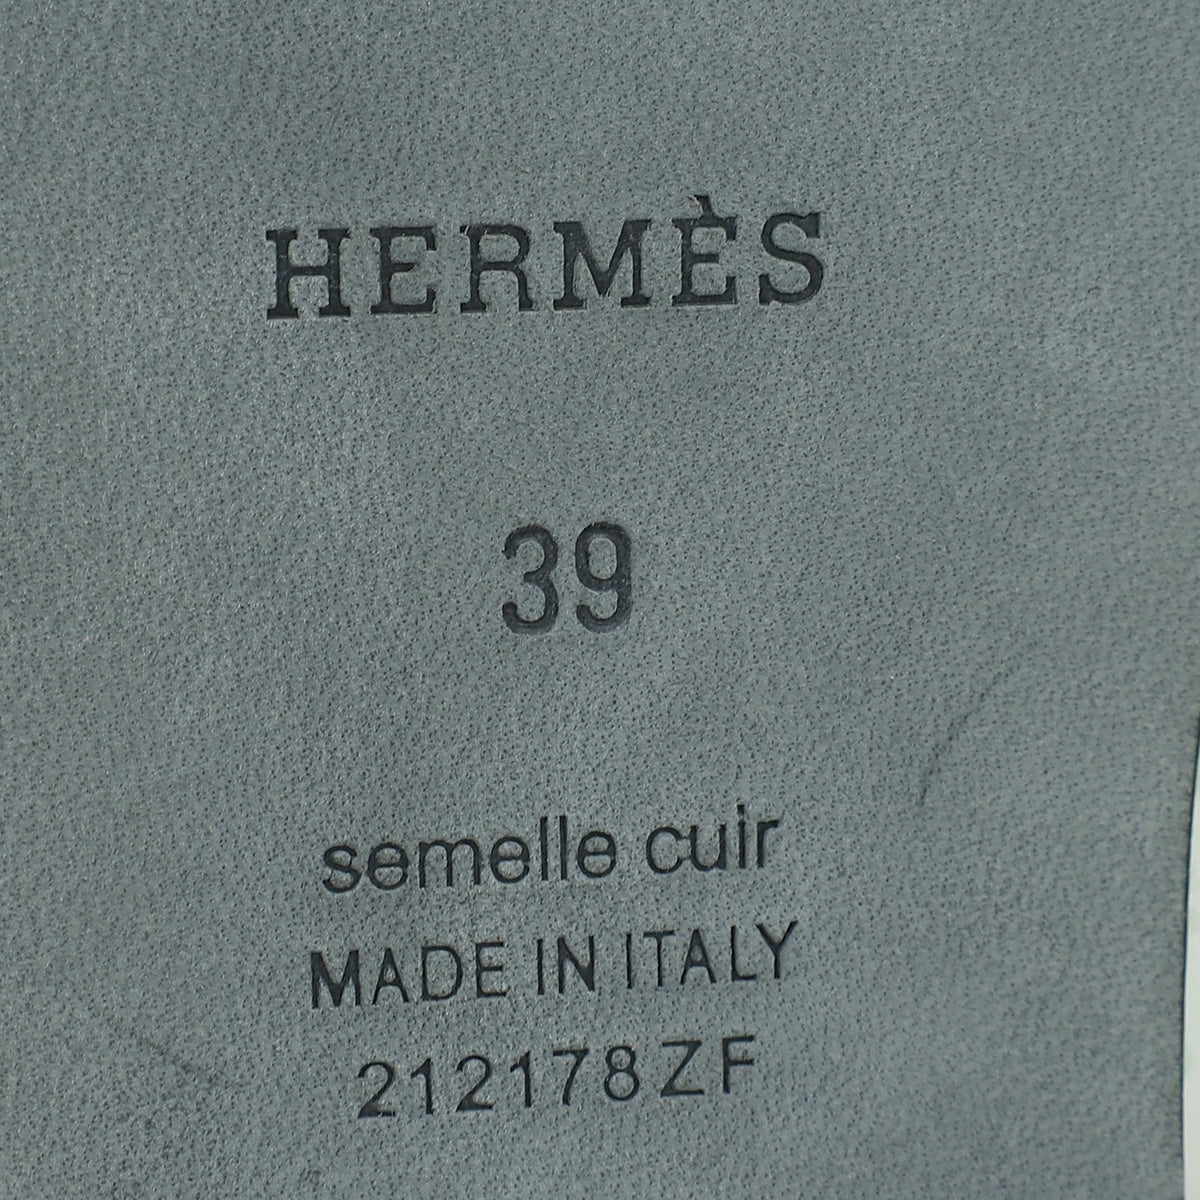 Hermes Vert D'eau Shearling Wool Oran Sandal 39